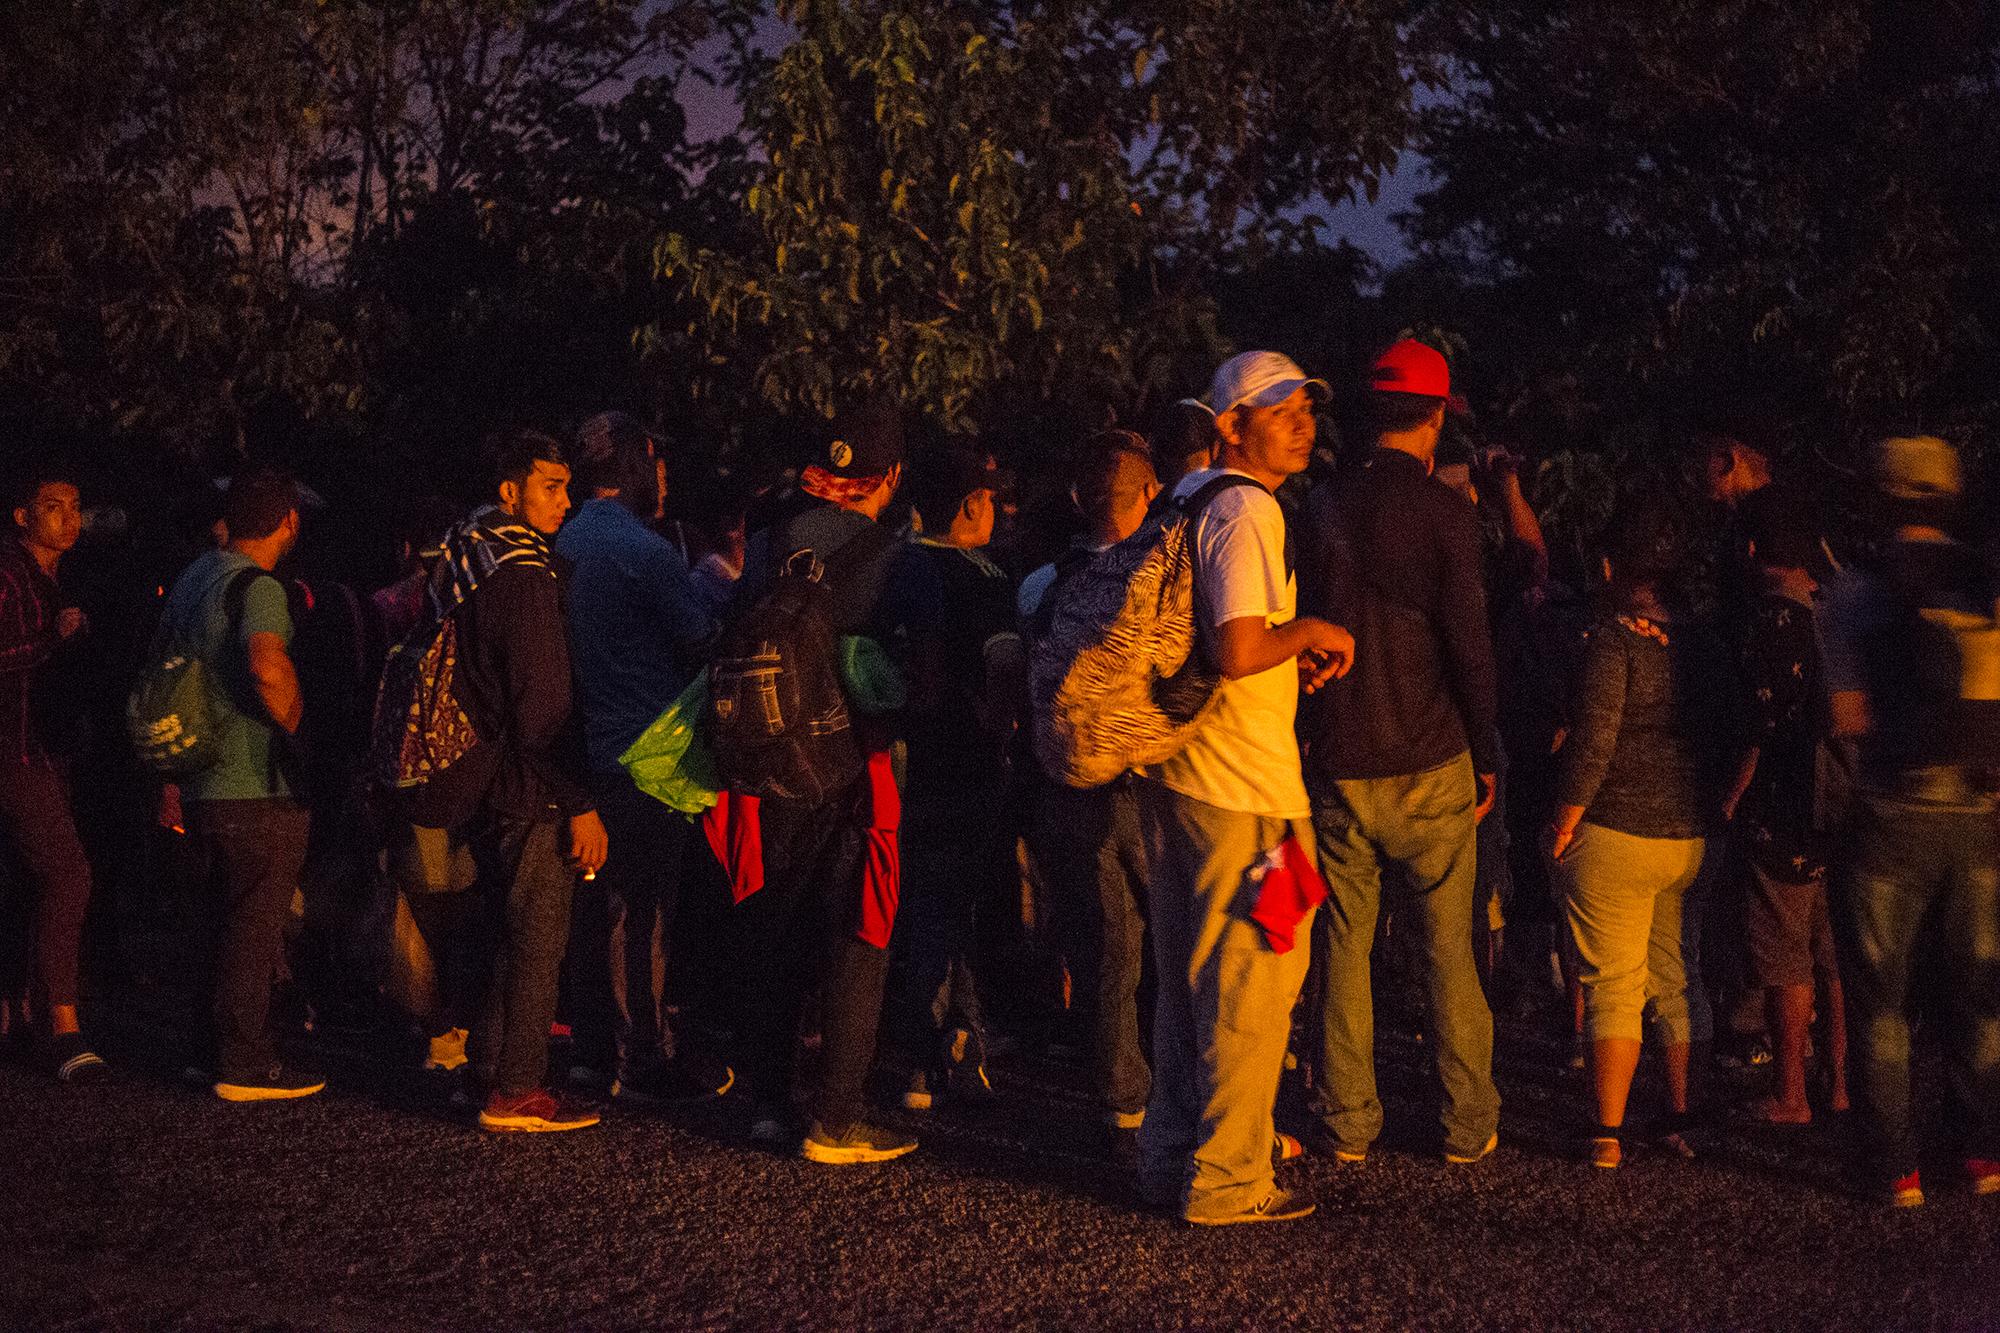 Ante la falta de un equipo de coordinación, la caravana se fragmentó justo después de salir de San Pedro Sula, en Honduras. Una parte ingresó a Guatemala por la frontera de Agua Caliente, en el departamento de Chiquimula; otros lo hicieron por la frontera de El Corinto, en el departamento de Izabal. Una vez en Guatemala, algunos se dirigieron a la capital, otros hasta la frontera de Tecún Umán; y un tercer grupo, quizá el más numeroso, hacia Petén.